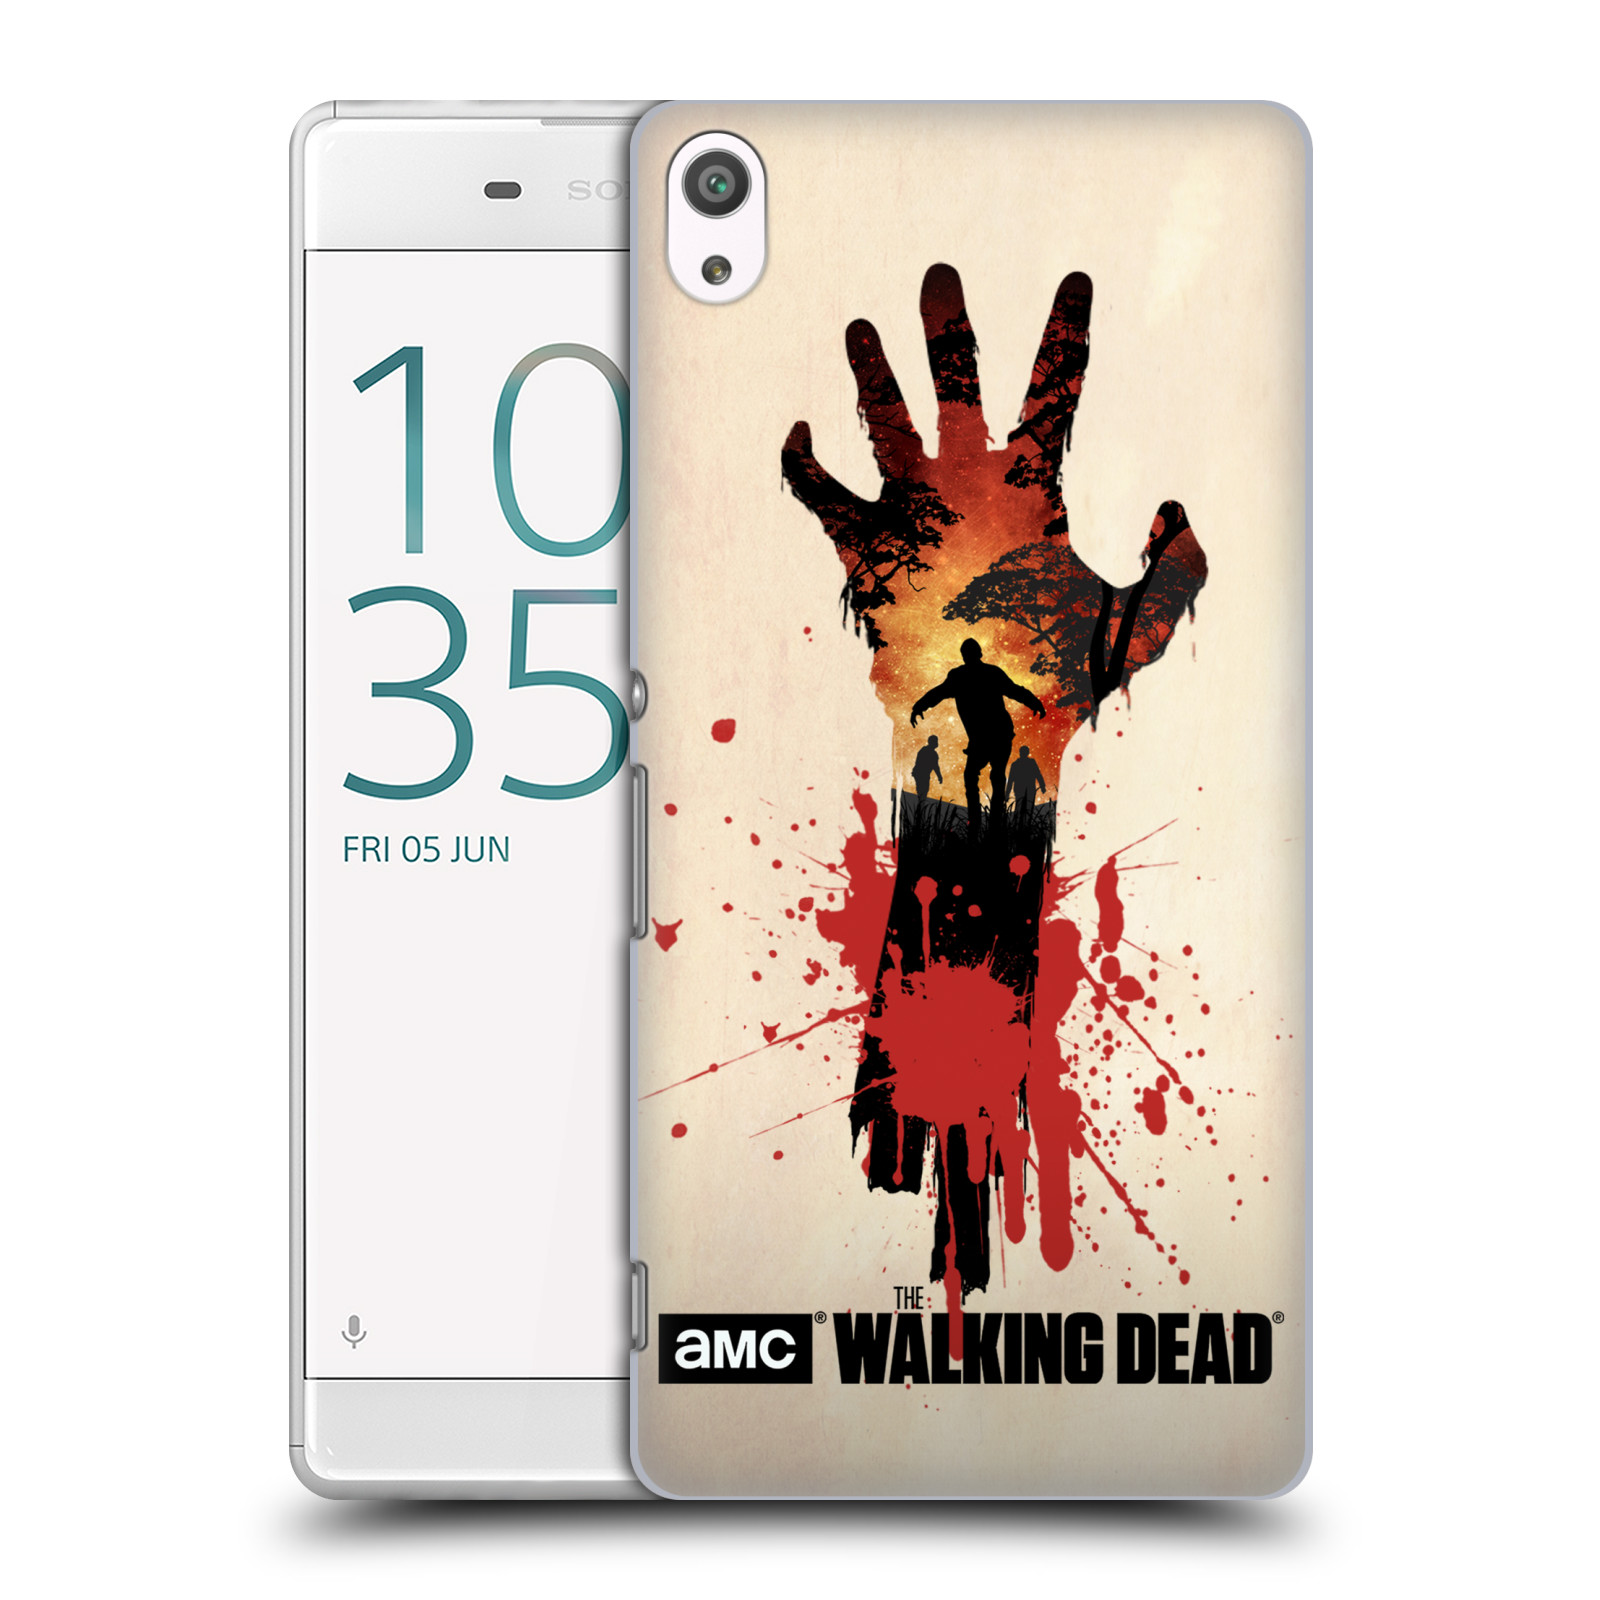 Pouzdro na mobil Sony Xperia XA ULTRA - HEAD CASE - Živí Mrtví silueta ruky